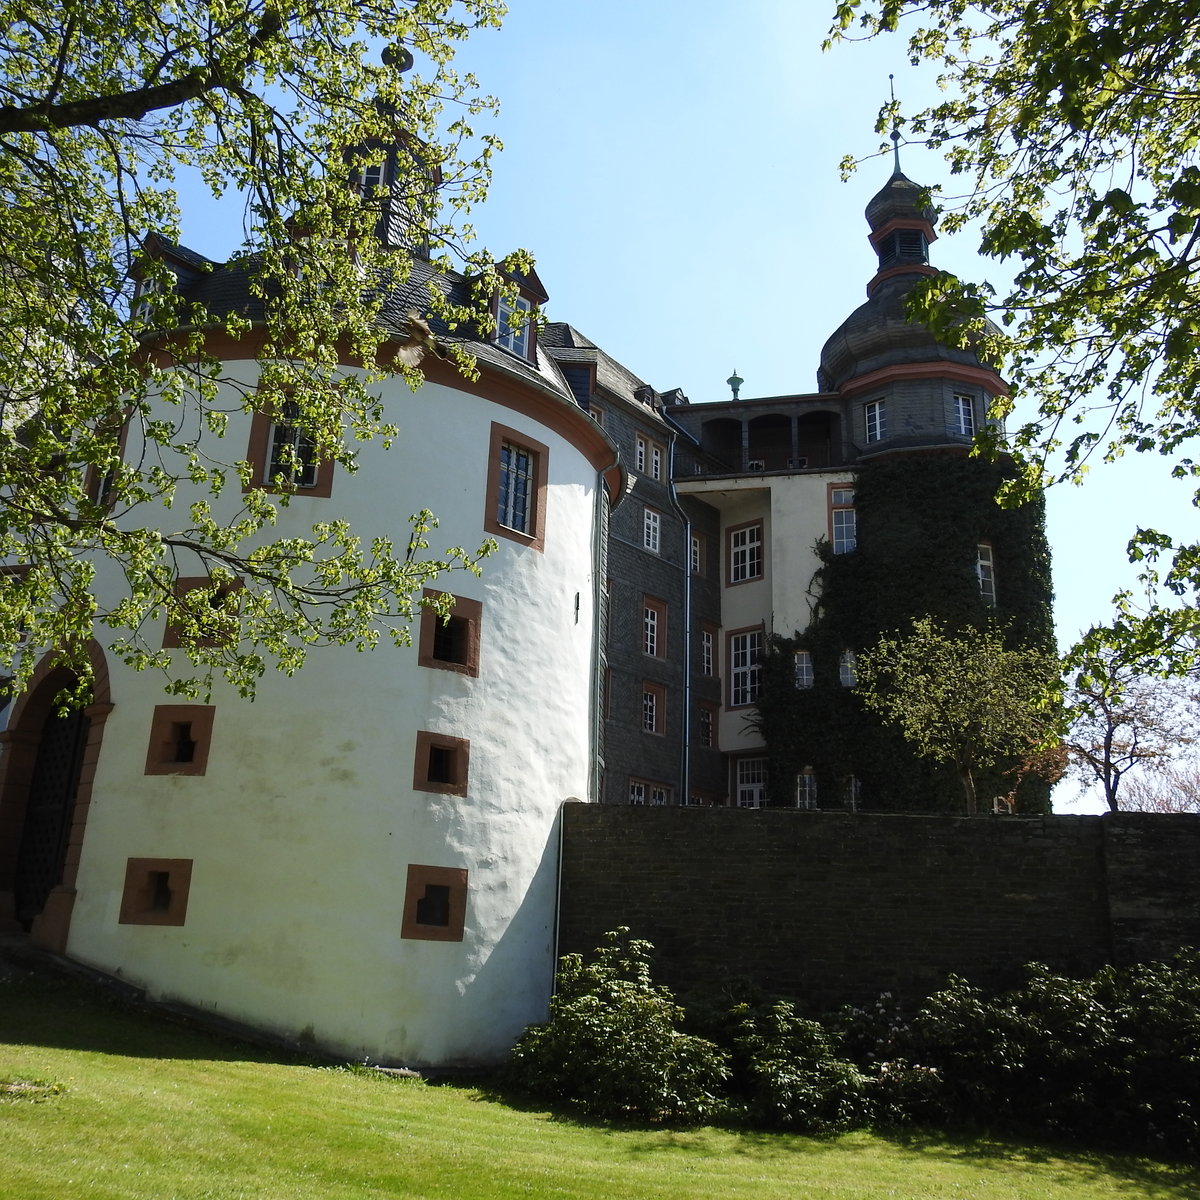 BAD BERLEBURG-SCHLOSS/RÜCKSEITE
In der Stadt im Rothaargebirge befindet sich auf einer Anhöhe über der Stadt ein mächtiges Schloss,dessen Anfänge auf eine Höhenburg aus dem 13. Jhdt. zurückgehen-
hier ein Bild von der Rückseite,dem Schlosspark aus,gesehen,am 10.5.2017...